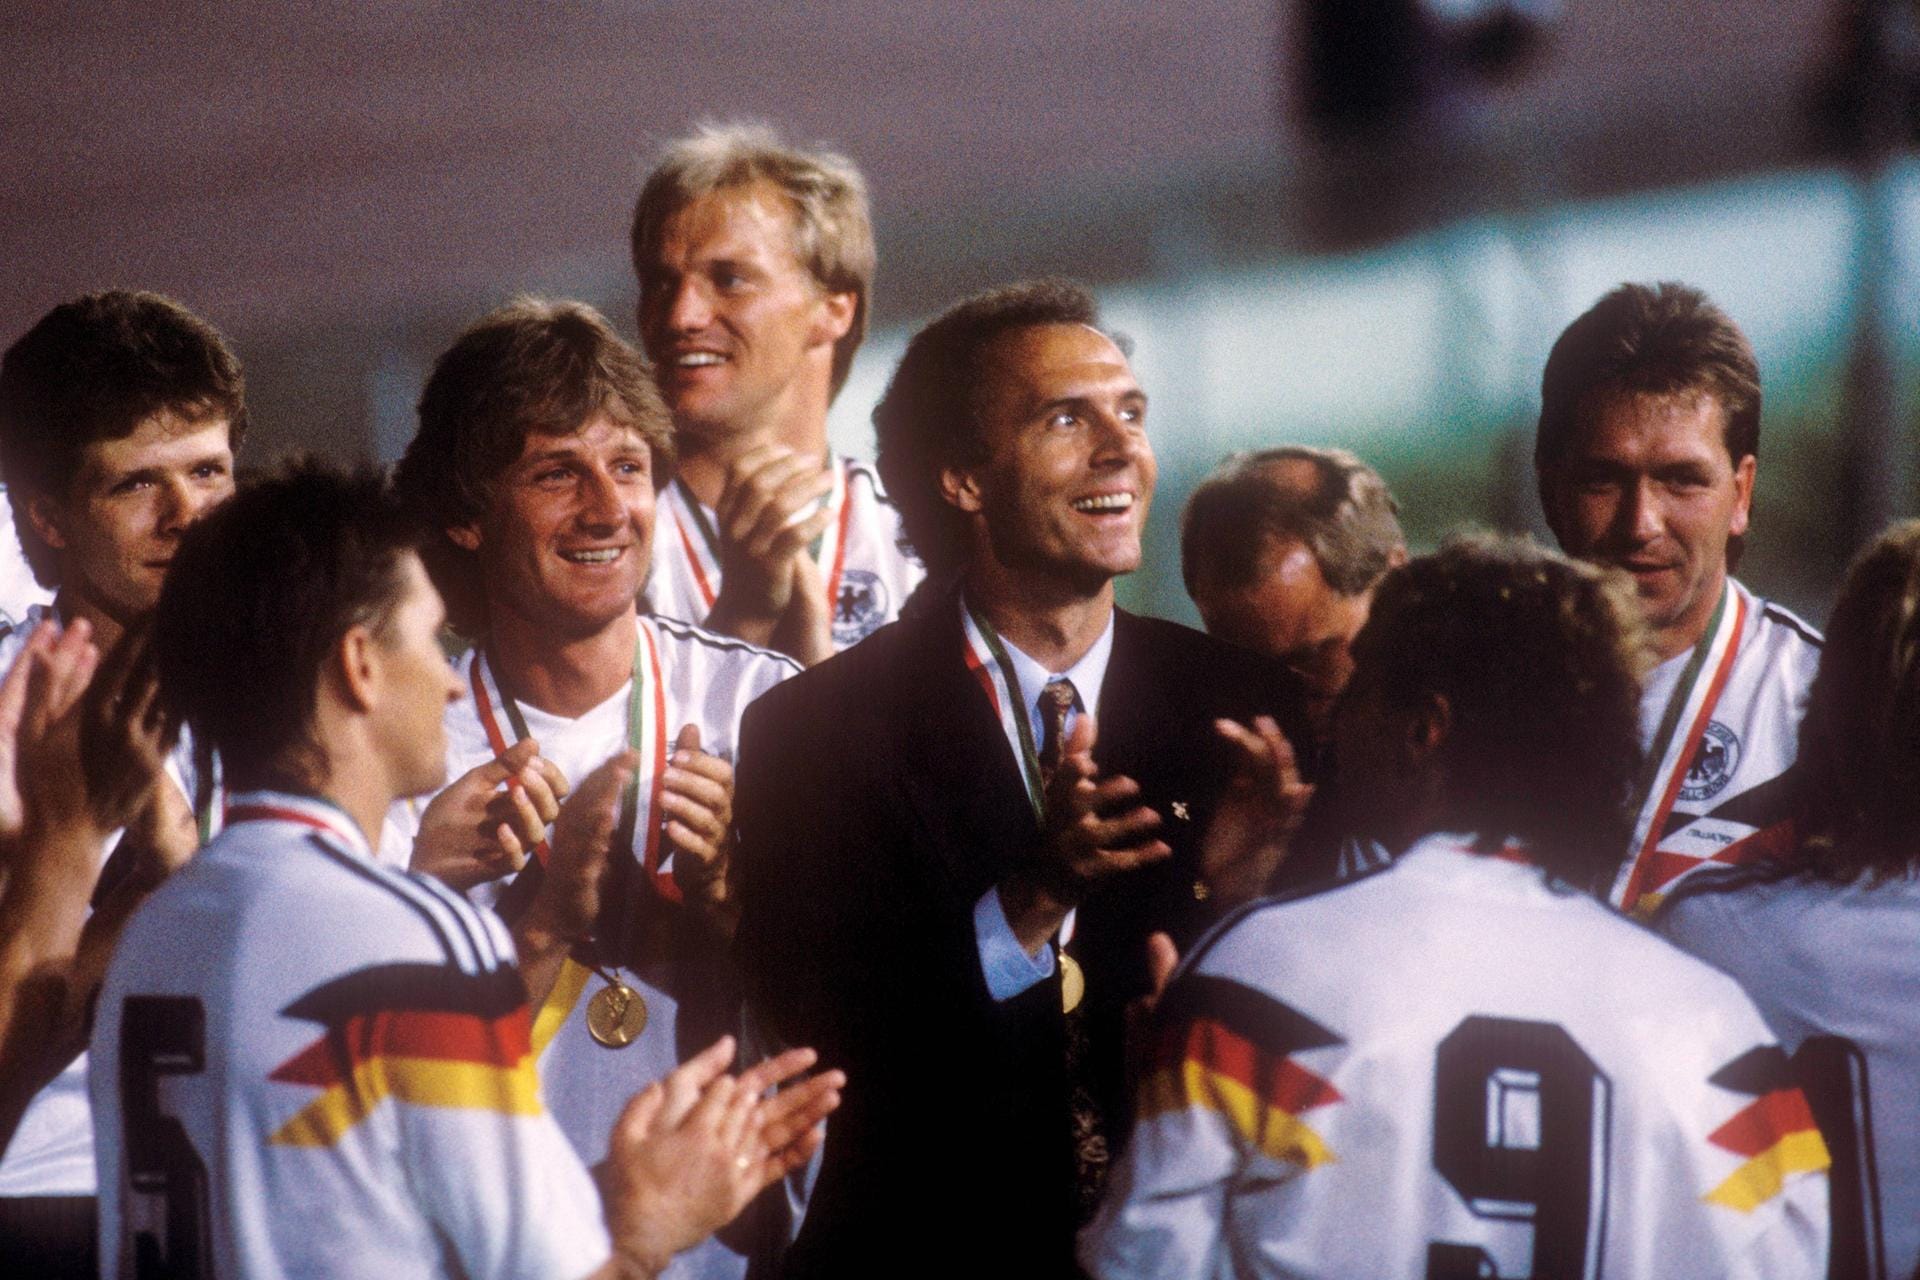 1990 trifft Beckenbauer im WM-Finale erneut auf Argentinien. Diesmal gewinnt Deutschland. Franz Beckenbauer hat damit den WM-Titel als Spieler und Trainer gewonnen.